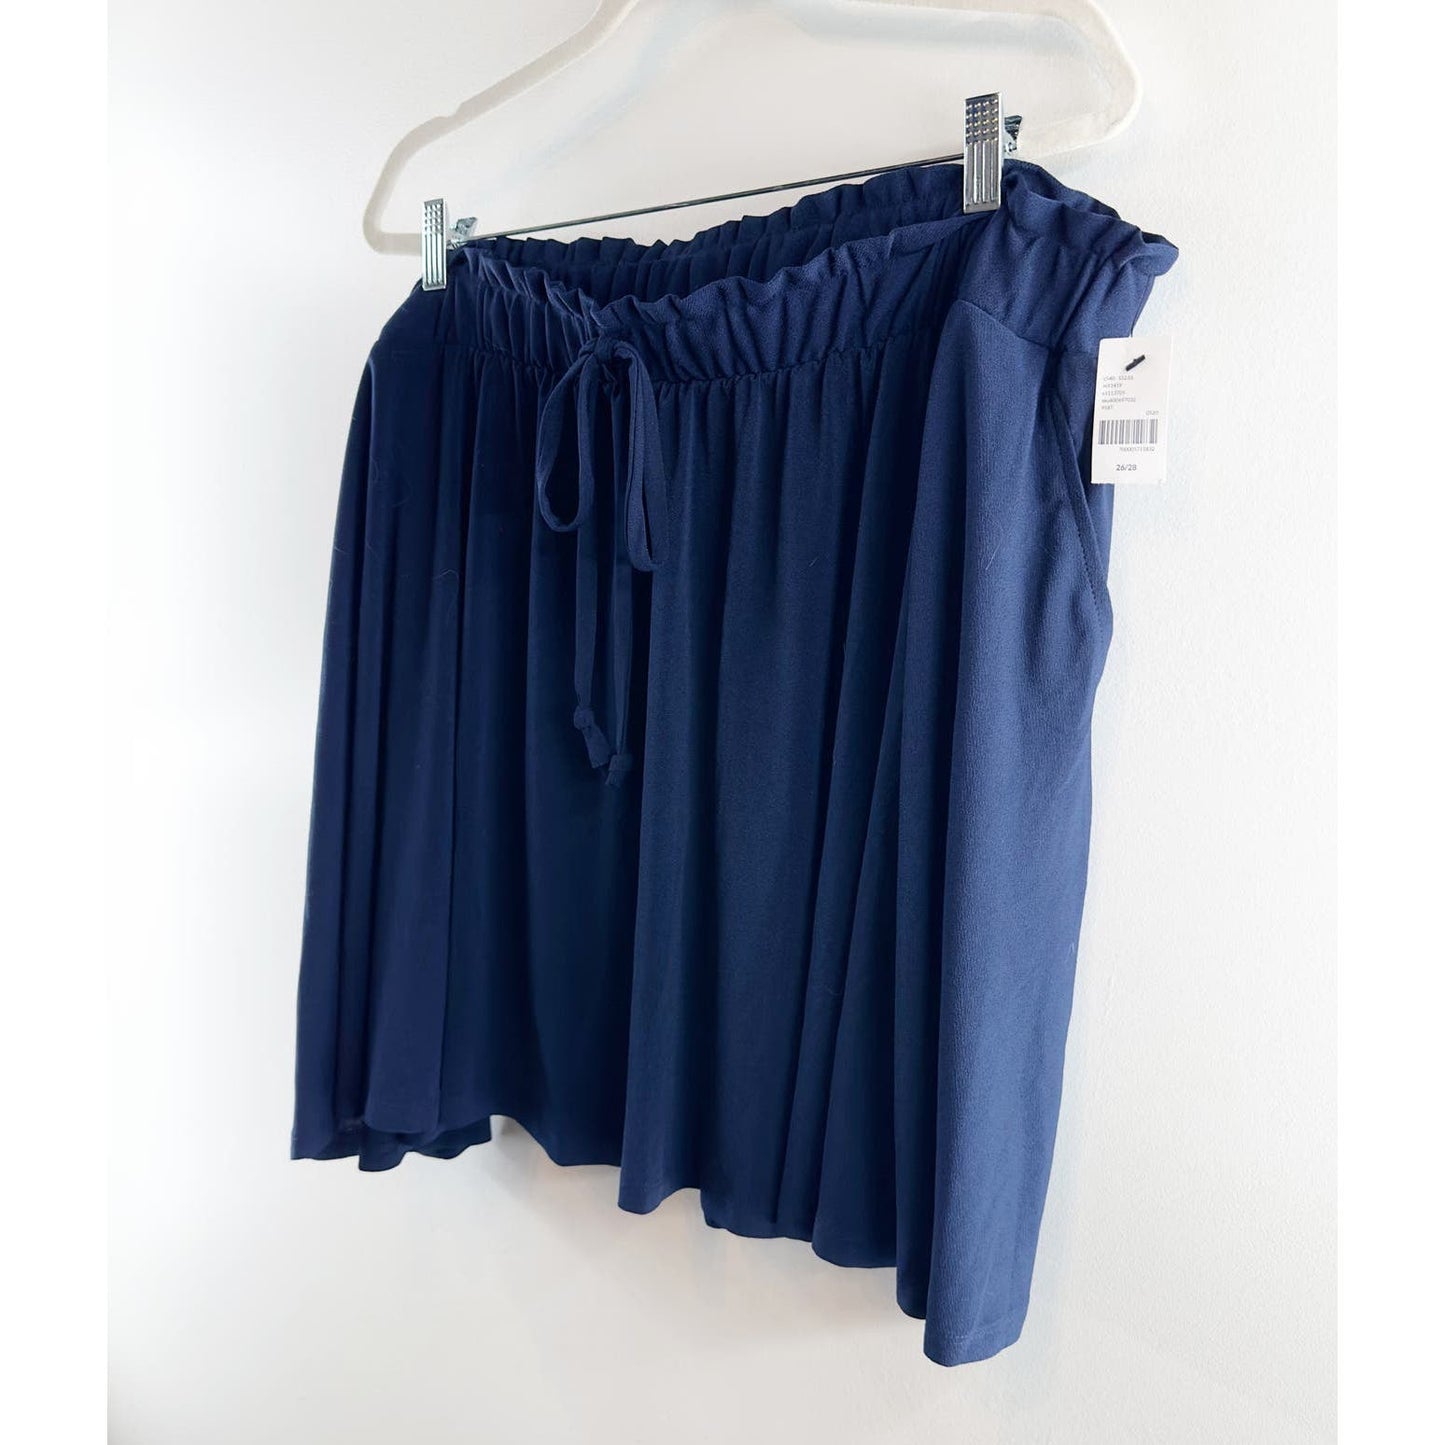 Lane Bryant Pull On Elastic Waist Drawstring Mini Skirt Navy Blue 26/28